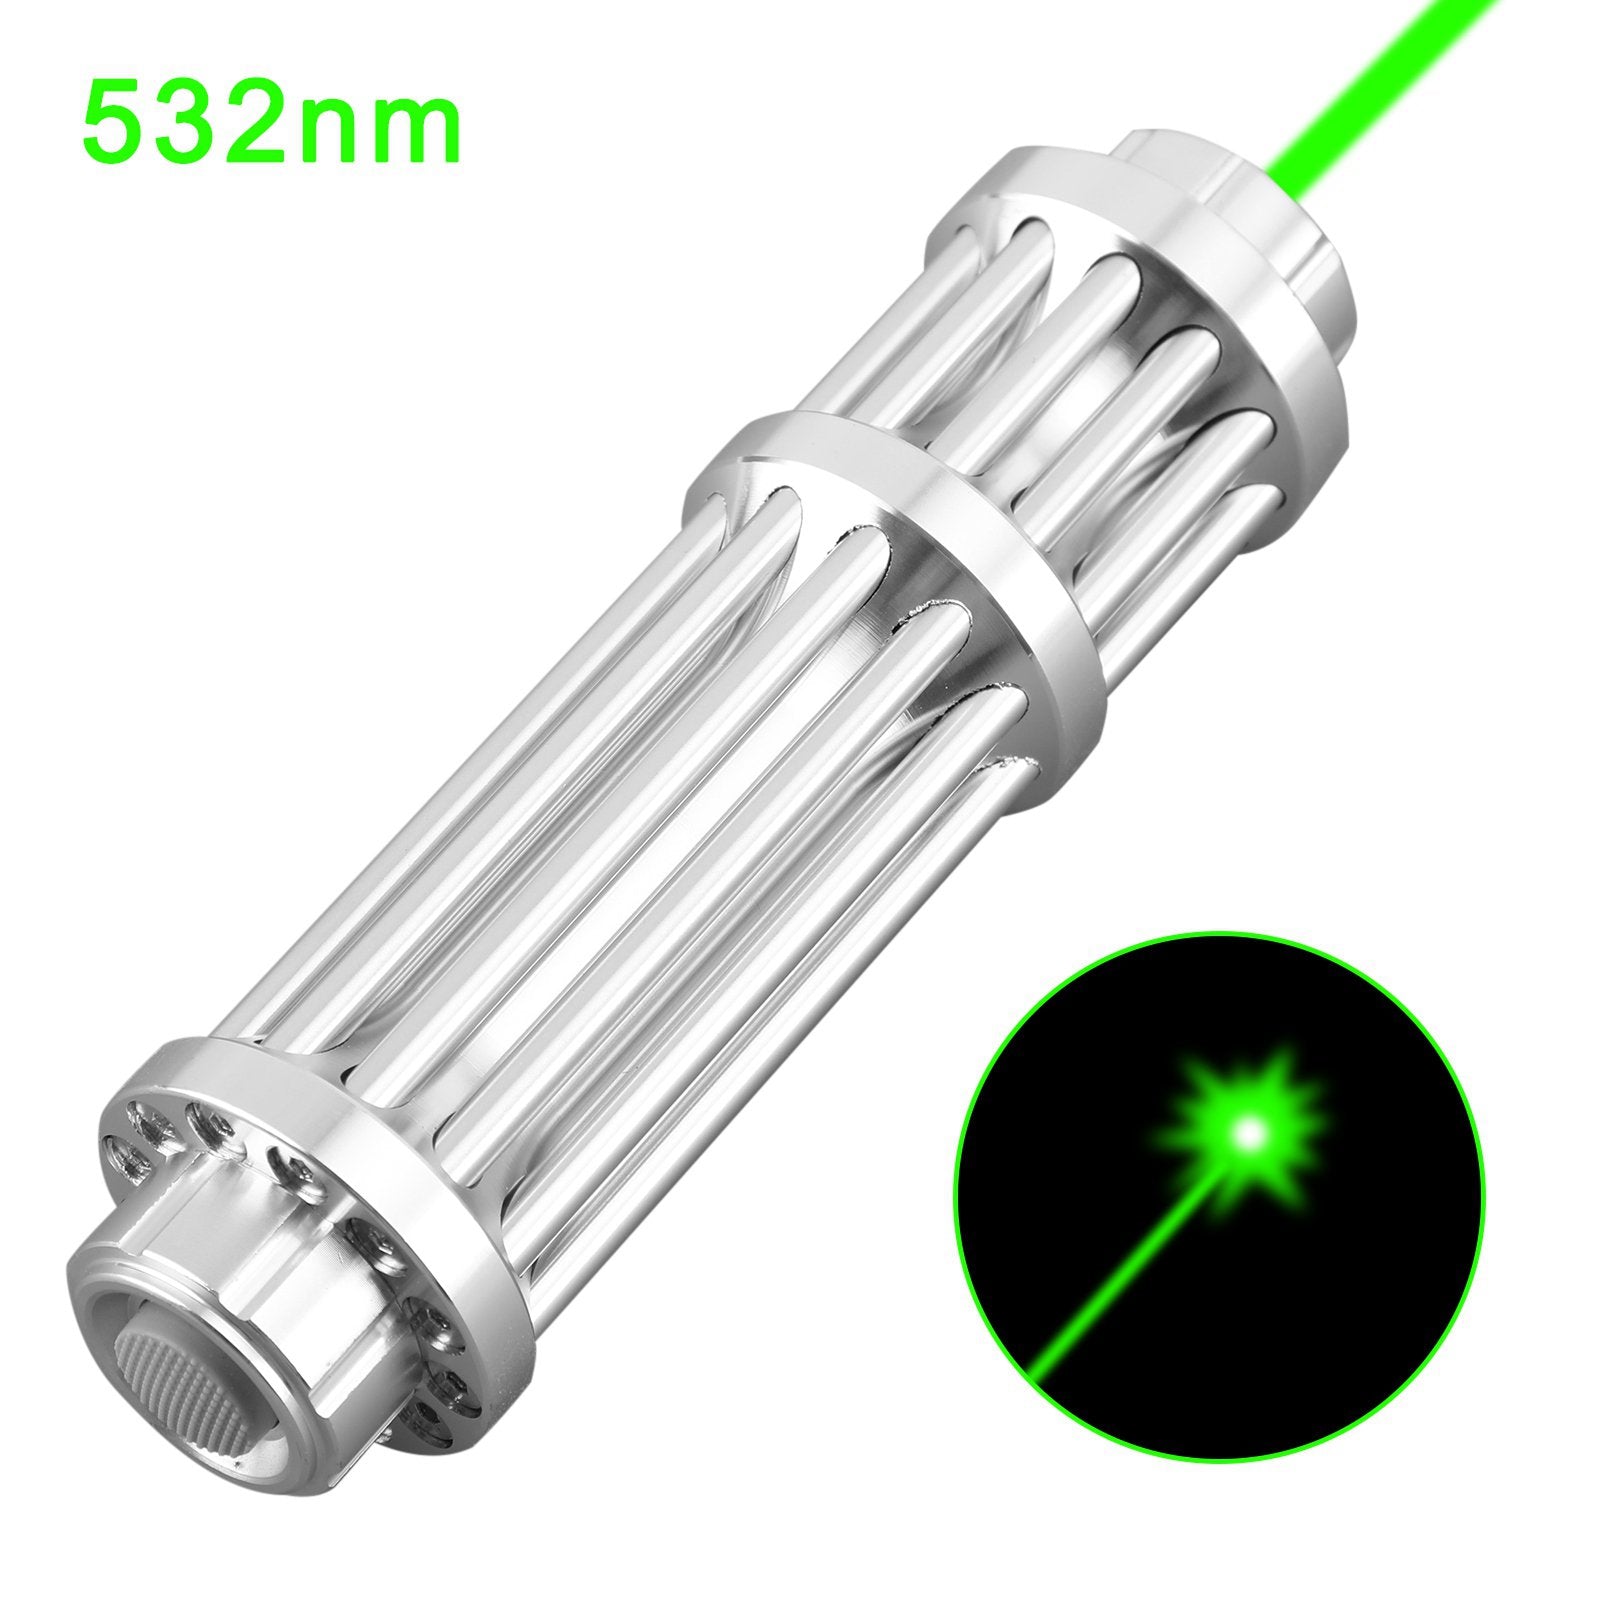 Pointeur laser vert de haute puissance 1 MW, 532 nm, visible jusqu'à 20 miles, modèle militaire